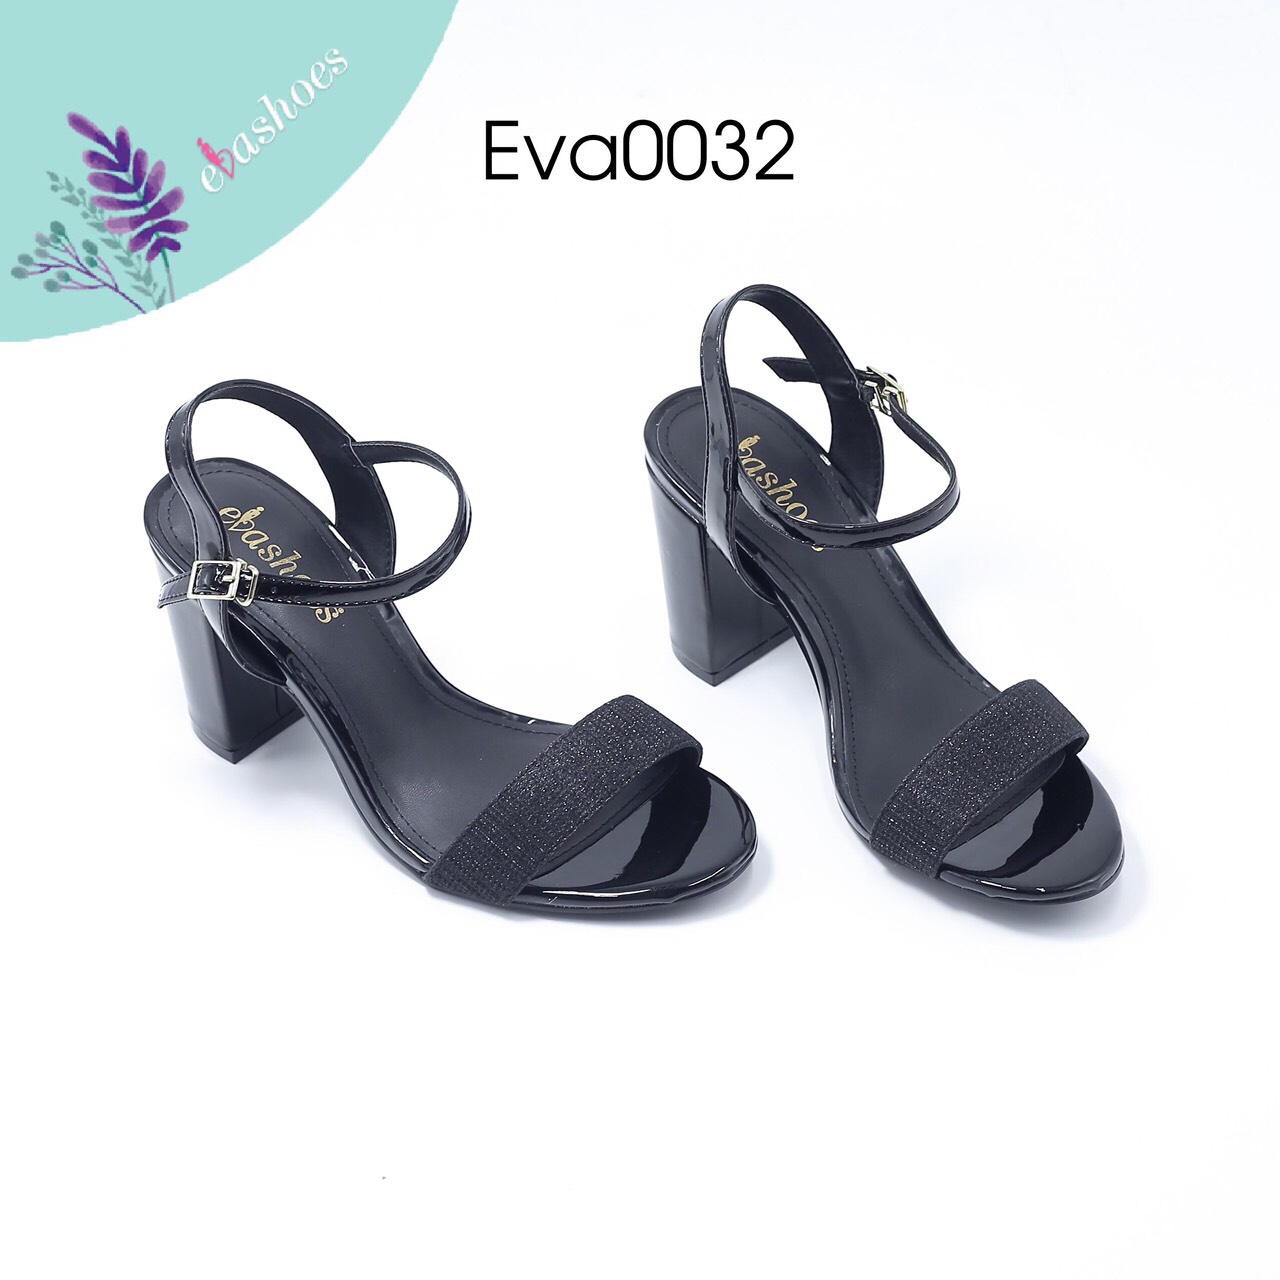 Sandal cao gót EVA0032